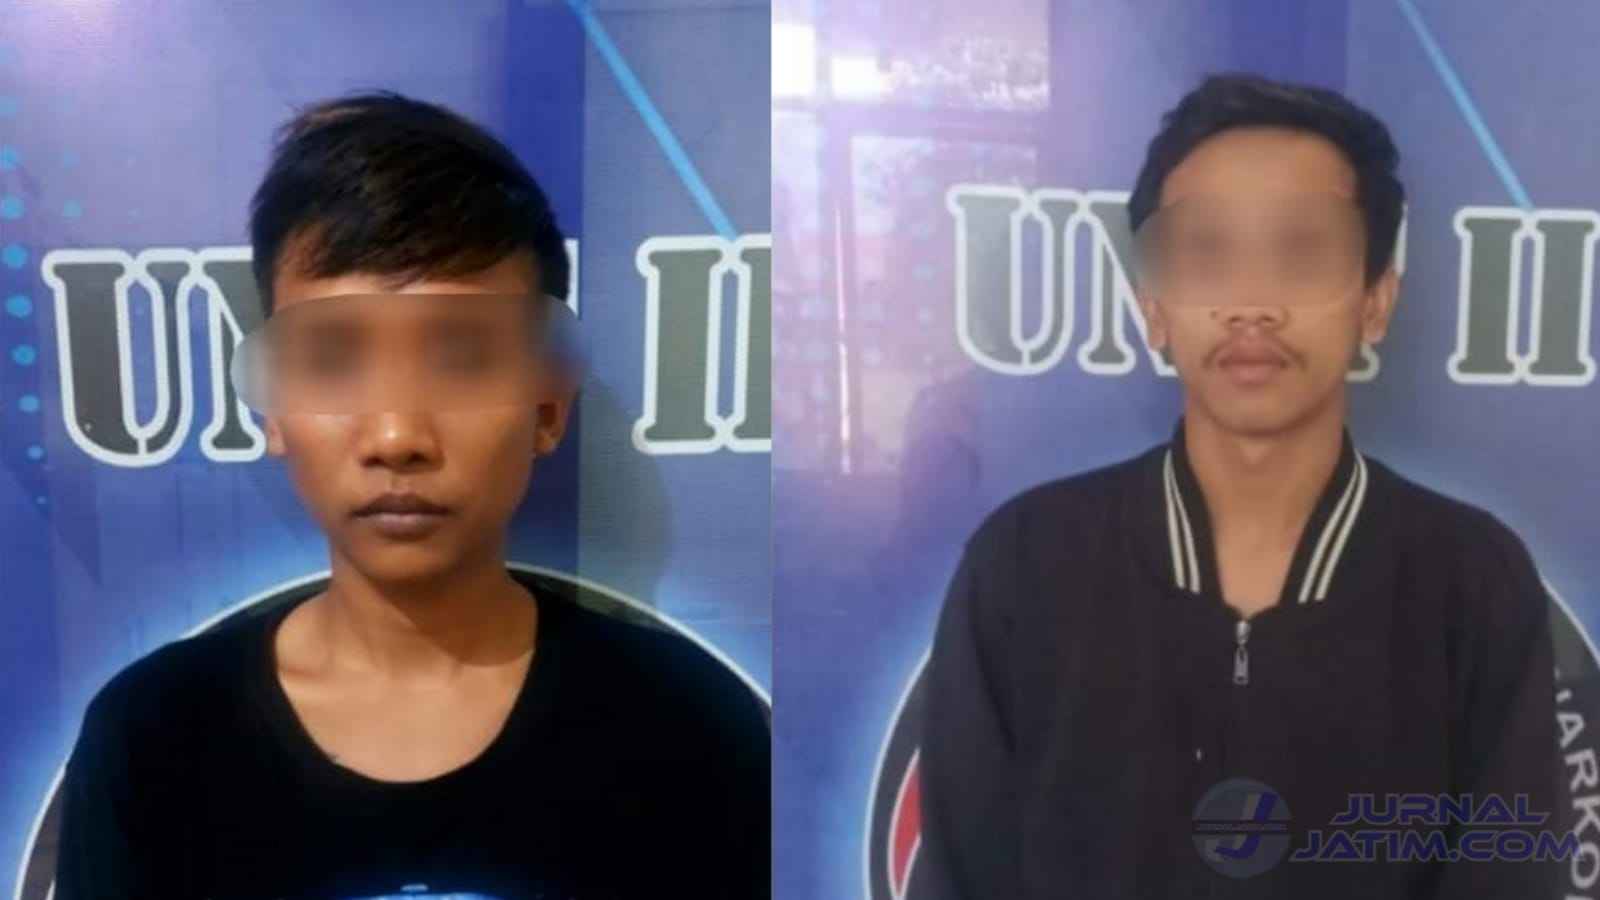 Transaksi Sabu-sabu di Ceweng Jombang, Dua Pelaku Disergap Polisi Pakaian Preman